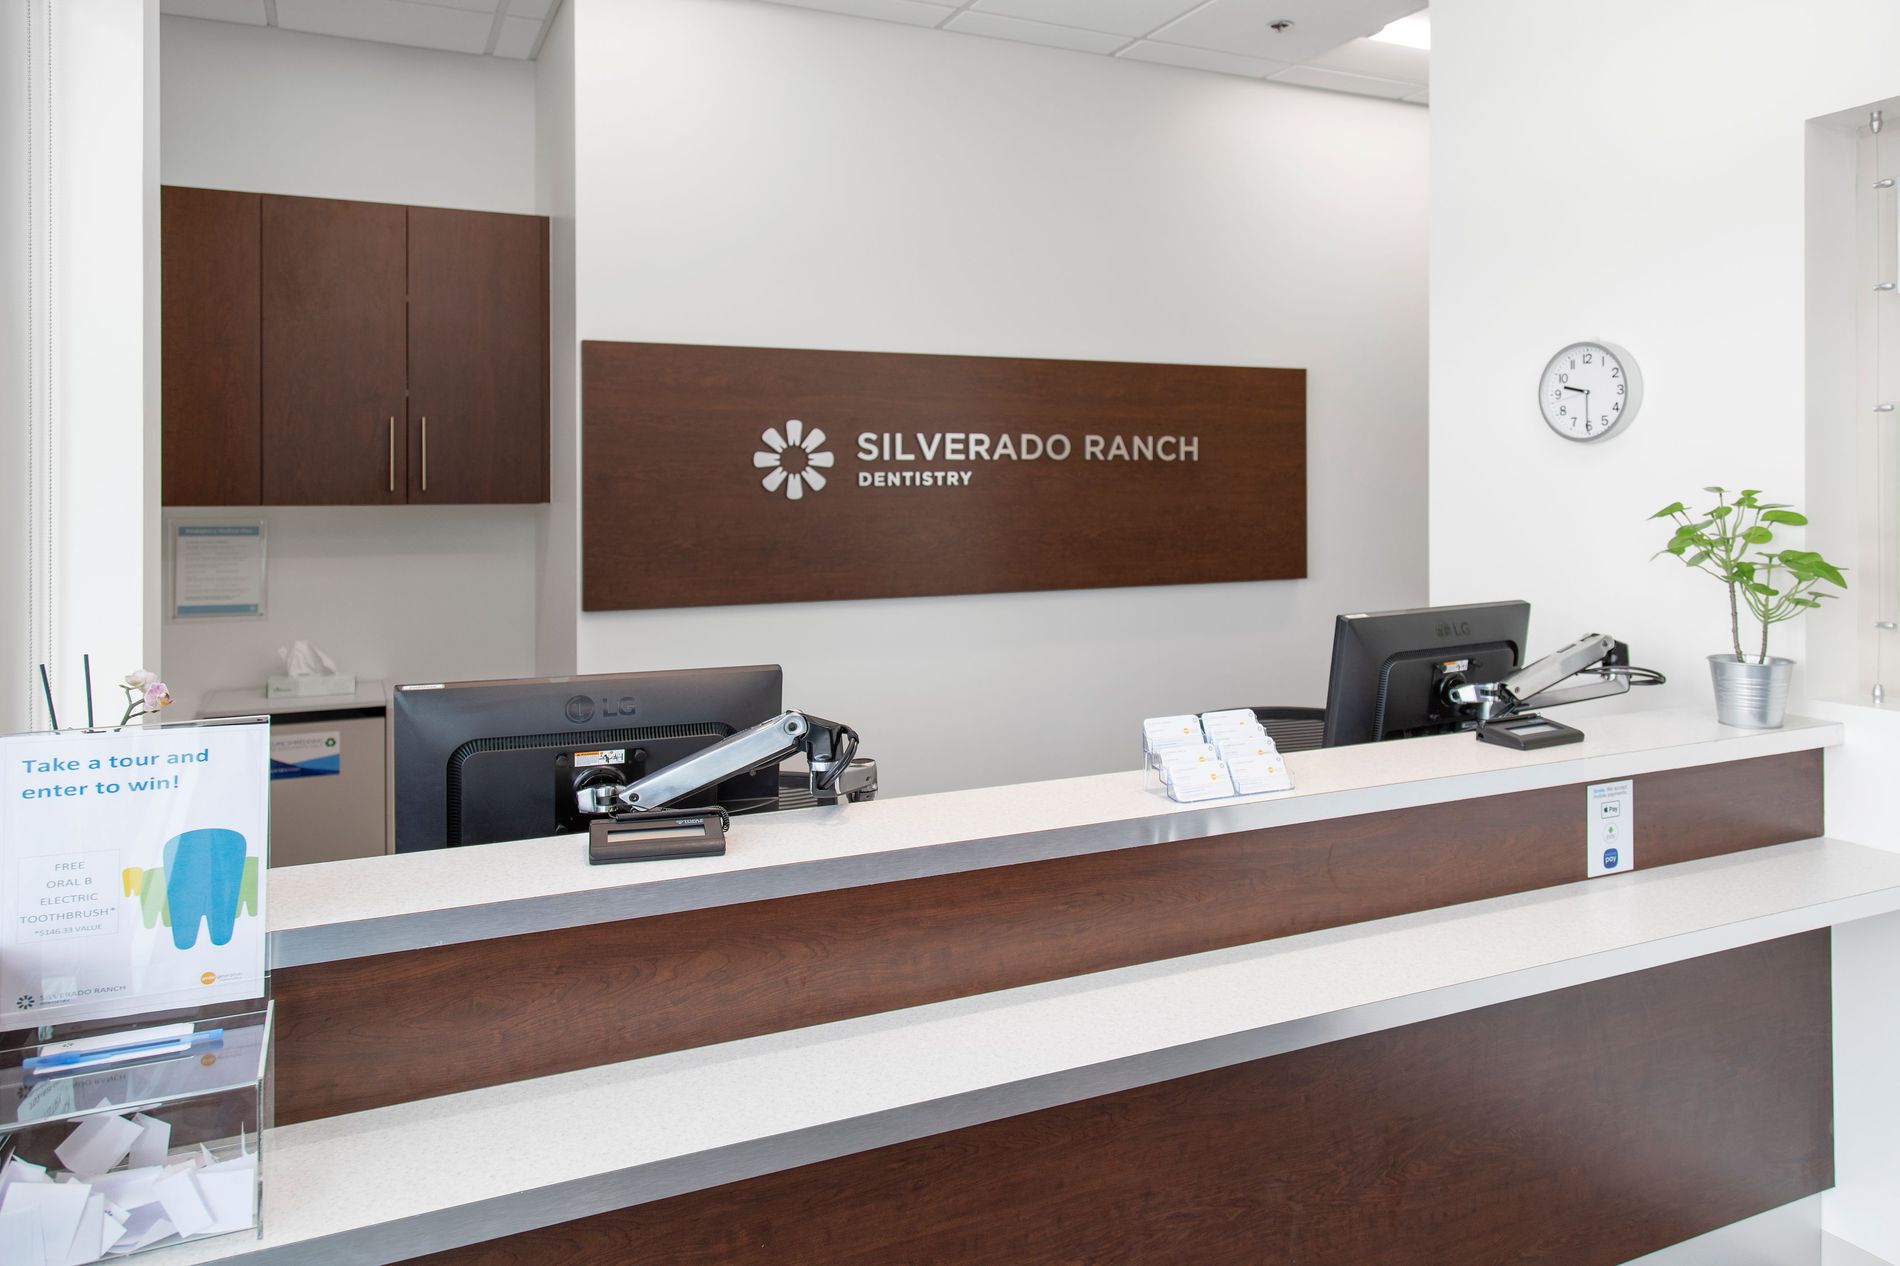 Images Silverado Ranch Dentistry